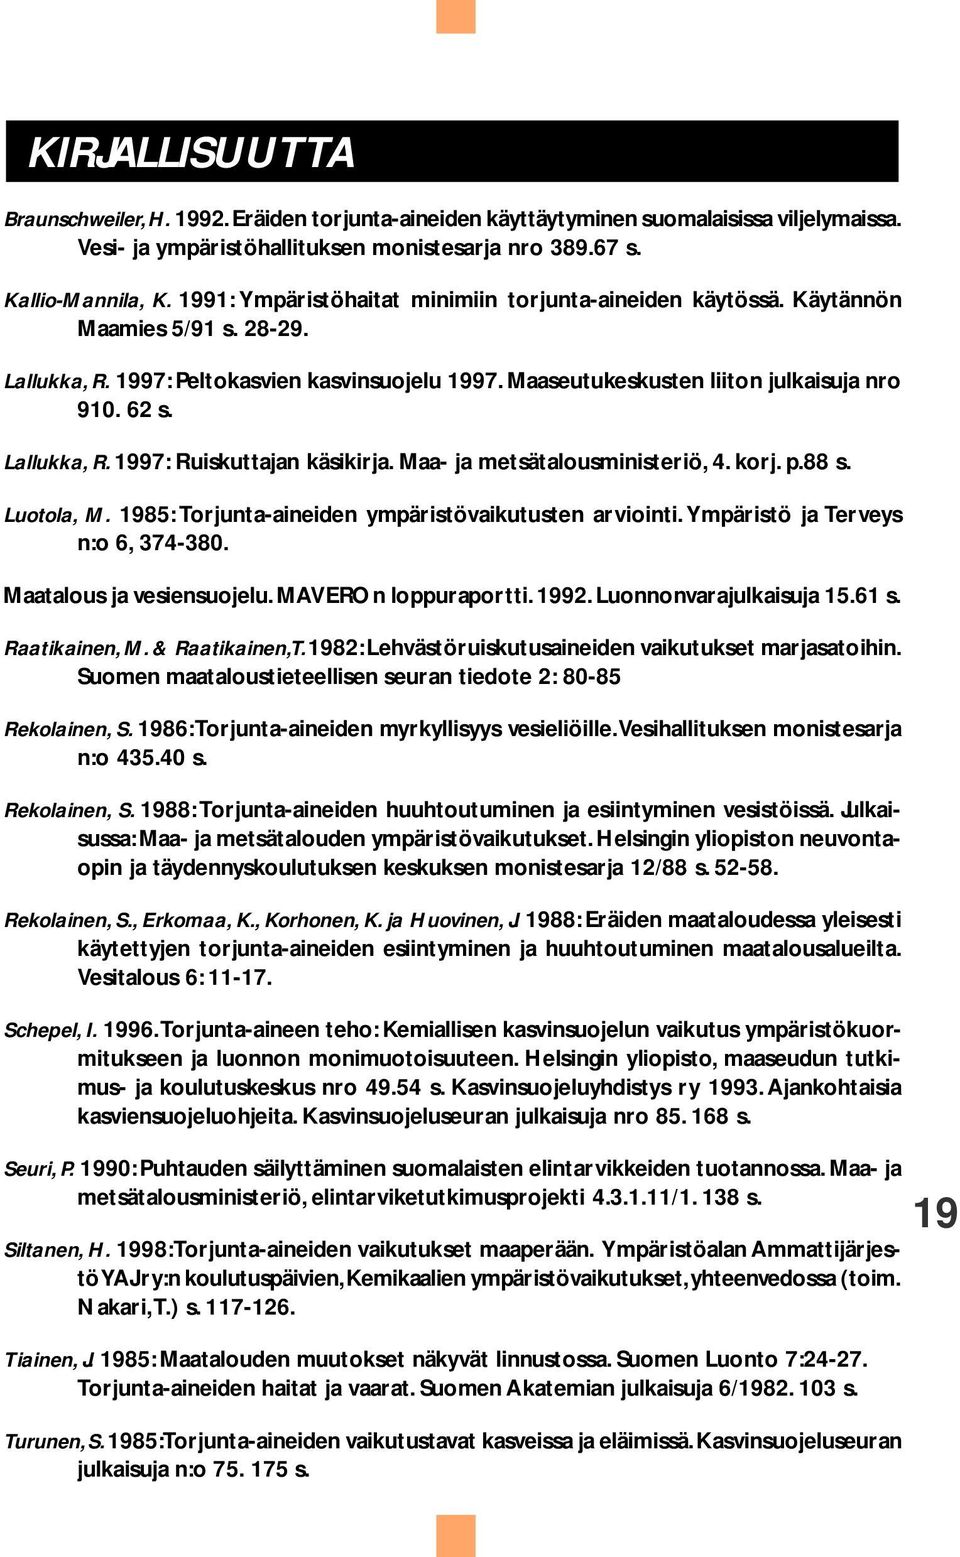 Lallukka, R. 1997: Ruiskuttajan käsikirja. Maa- ja metsätalousministeriö, 4. korj. p.88 s. Luotola, M. 1985: Torjunta-aineiden ympäristövaikutusten arviointi. Ympäristö ja Terveys n:o 6, 374-380.